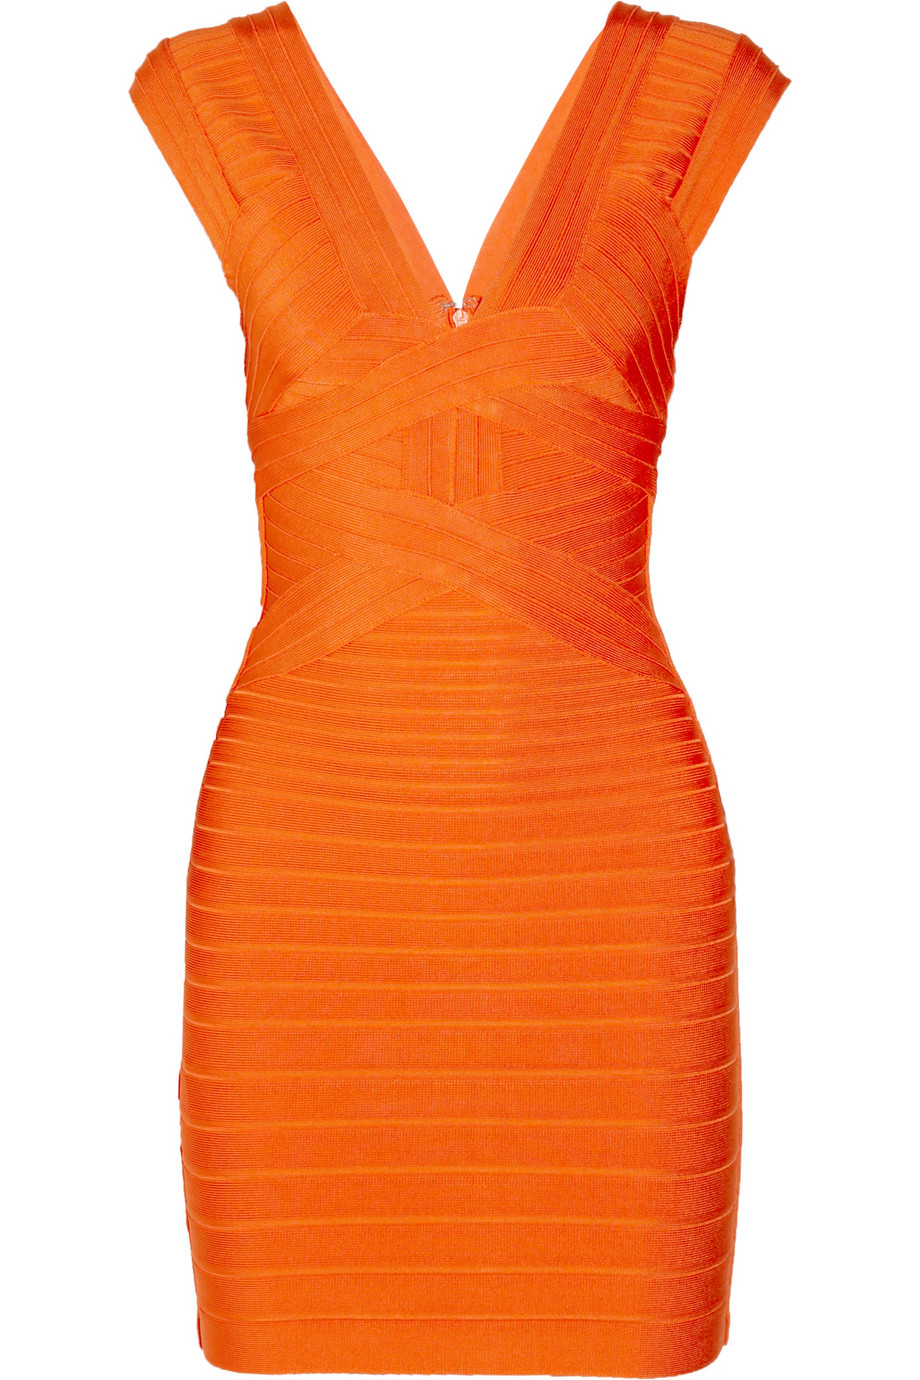 Hervé Léger Bandage Dress in Orange | Lyst